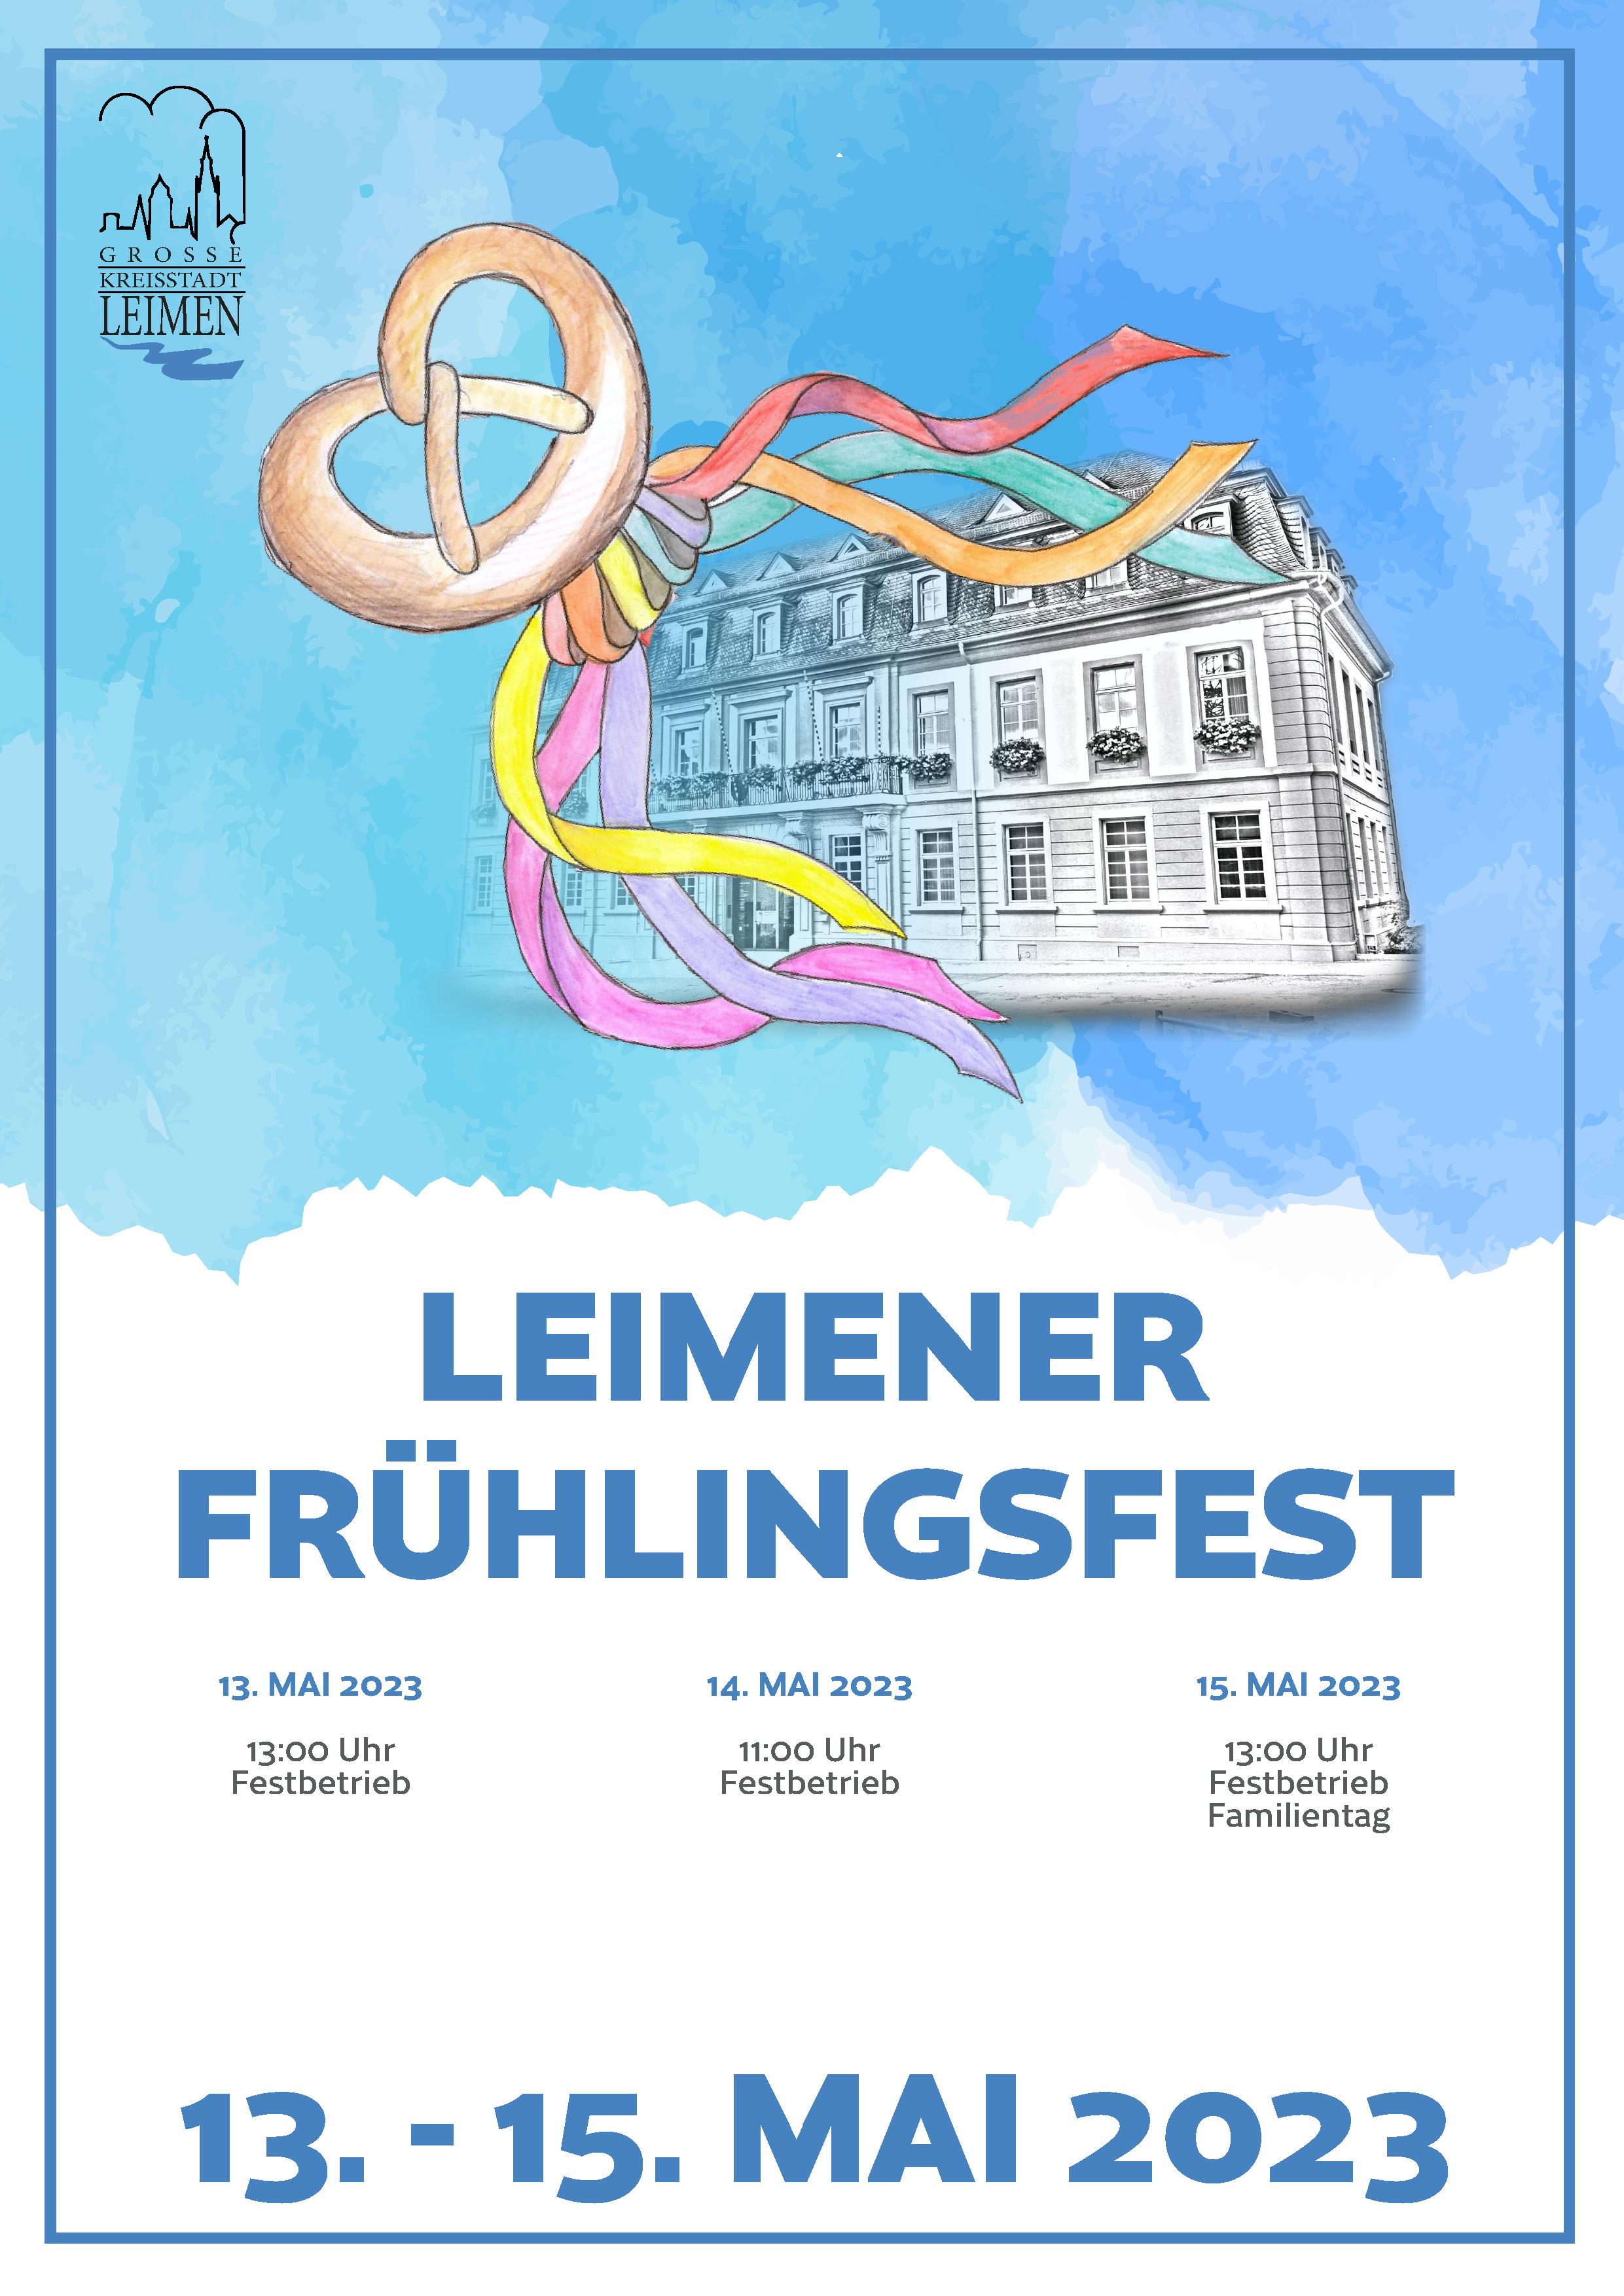  Leimener Frühlingsfest 2023 